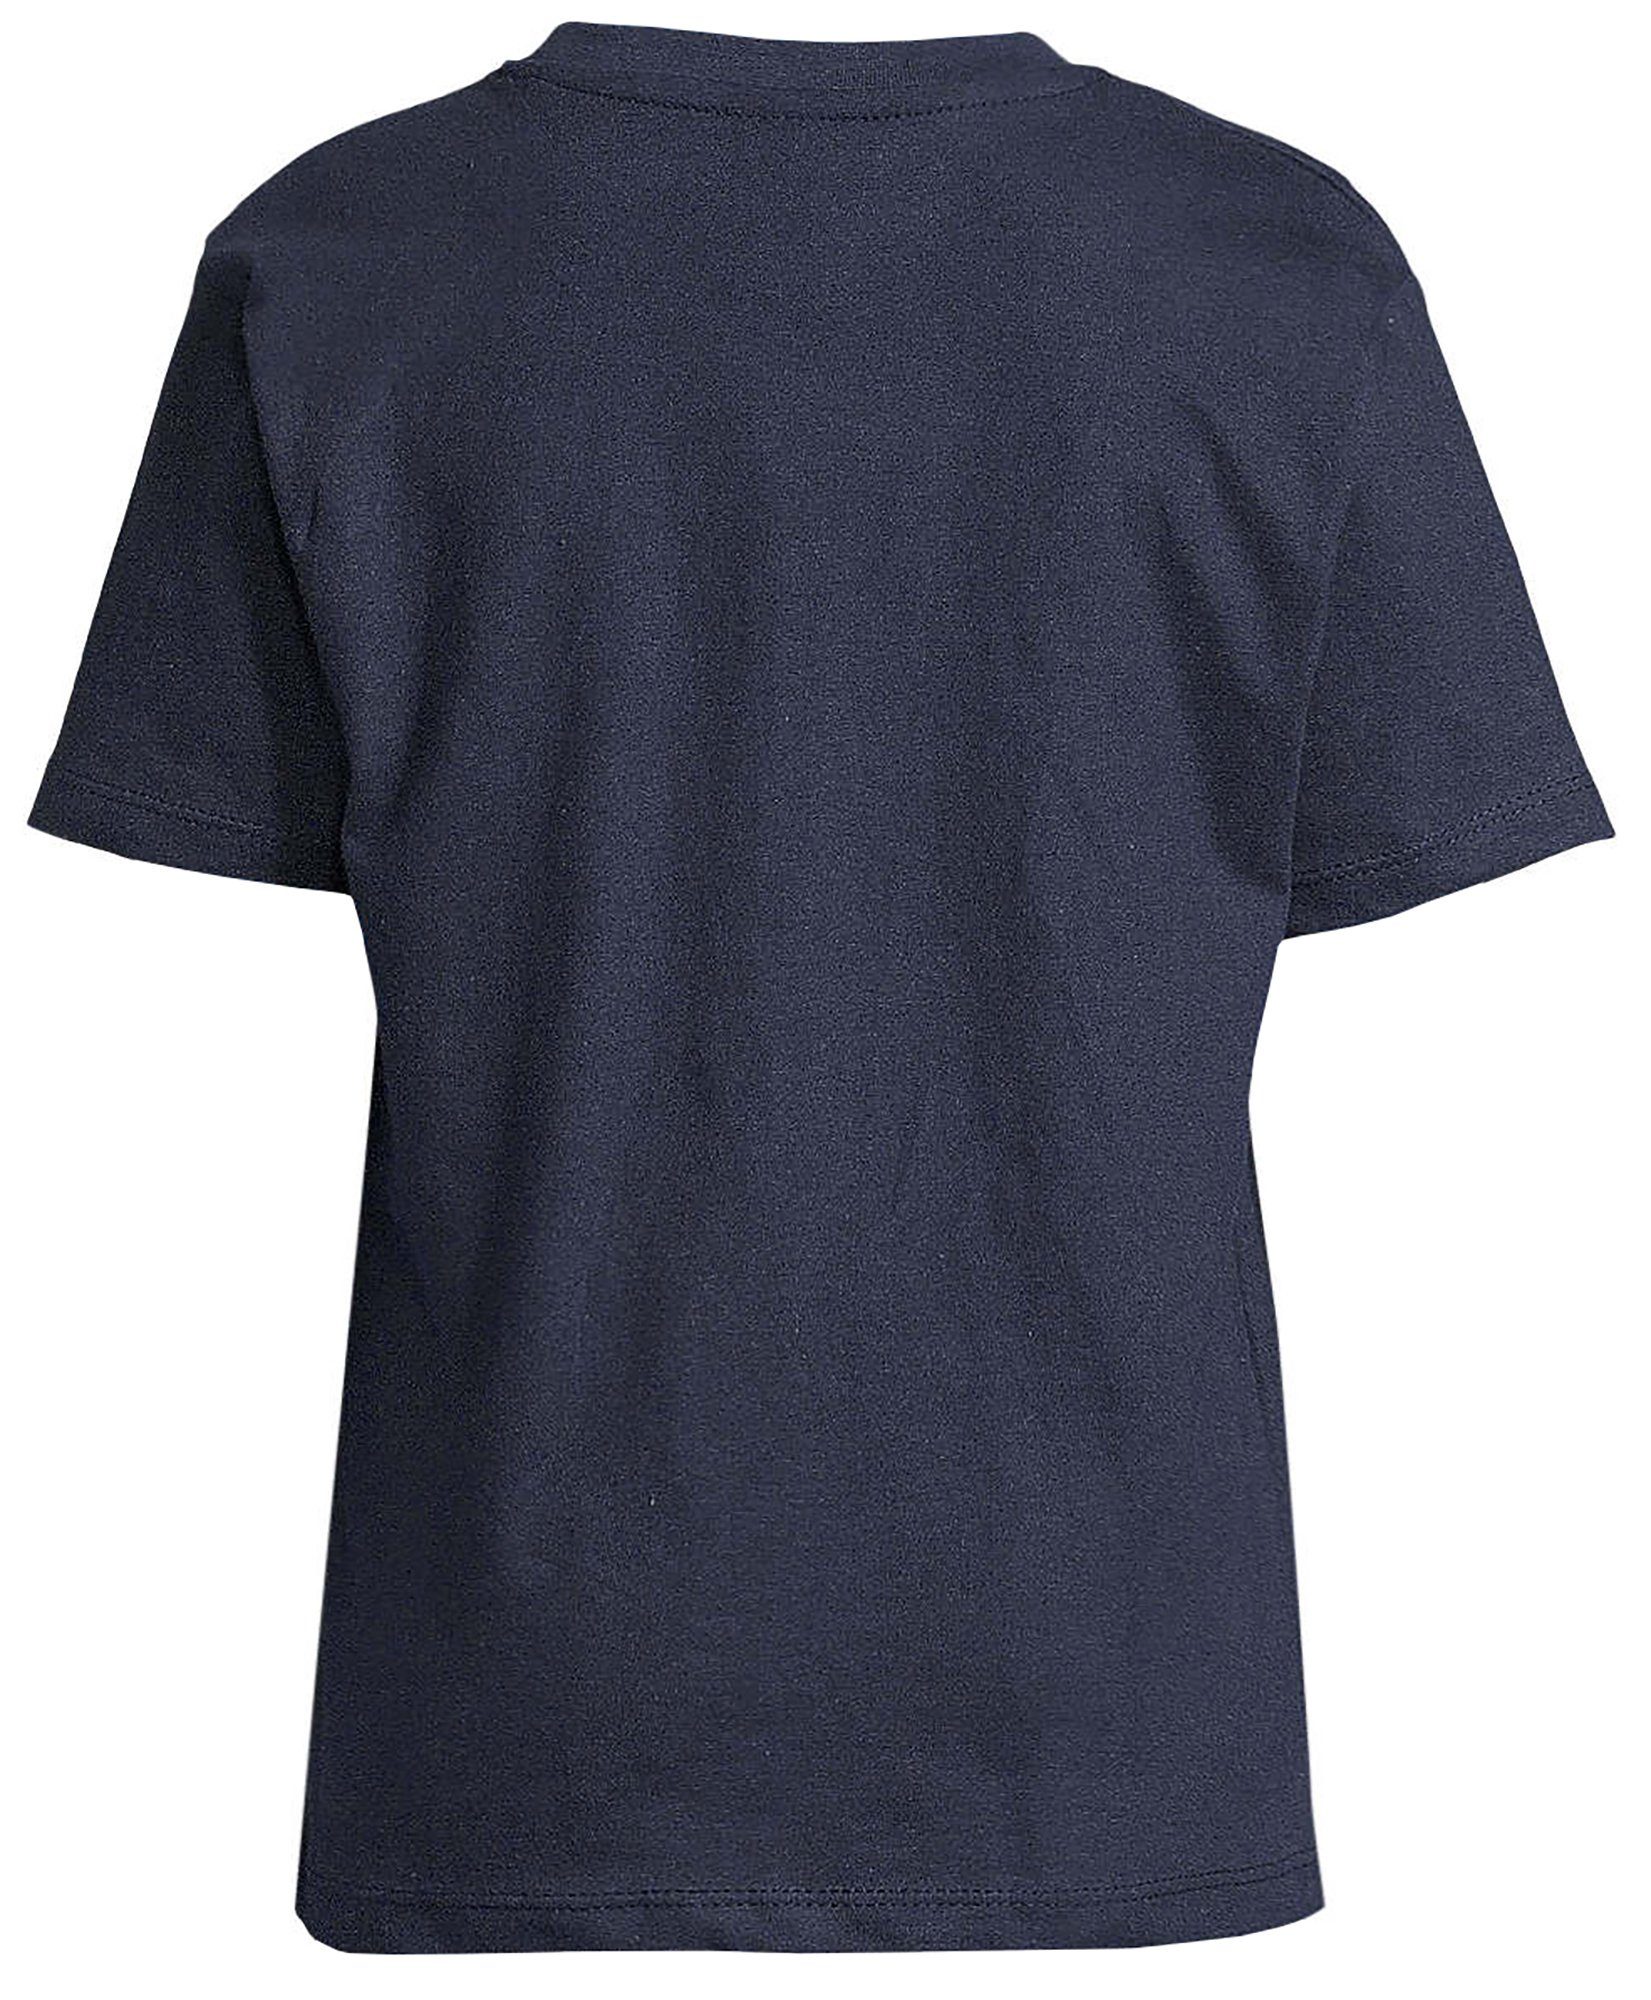 MyDesign24 T-Shirt Baby blau Baumwollshirt Wildtier mit Schildkröte bedruckt Print Kinder navy Shirt Aufdruck, i279 